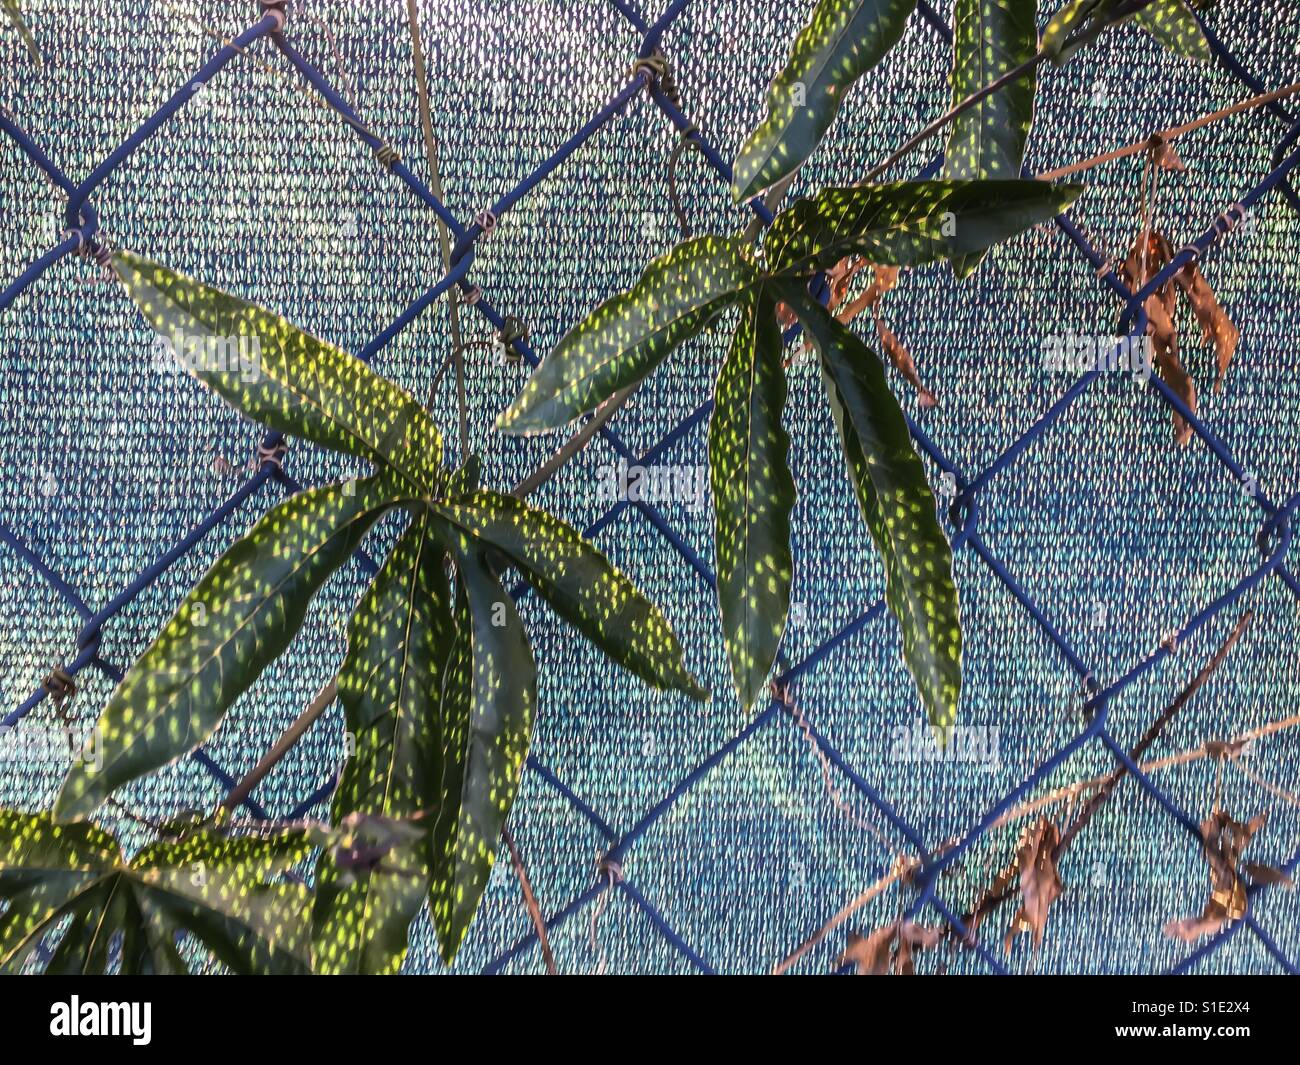 Les feuilles des plantes de lumière pommelé contre clôture métallique comme les étoiles de mer Banque D'Images